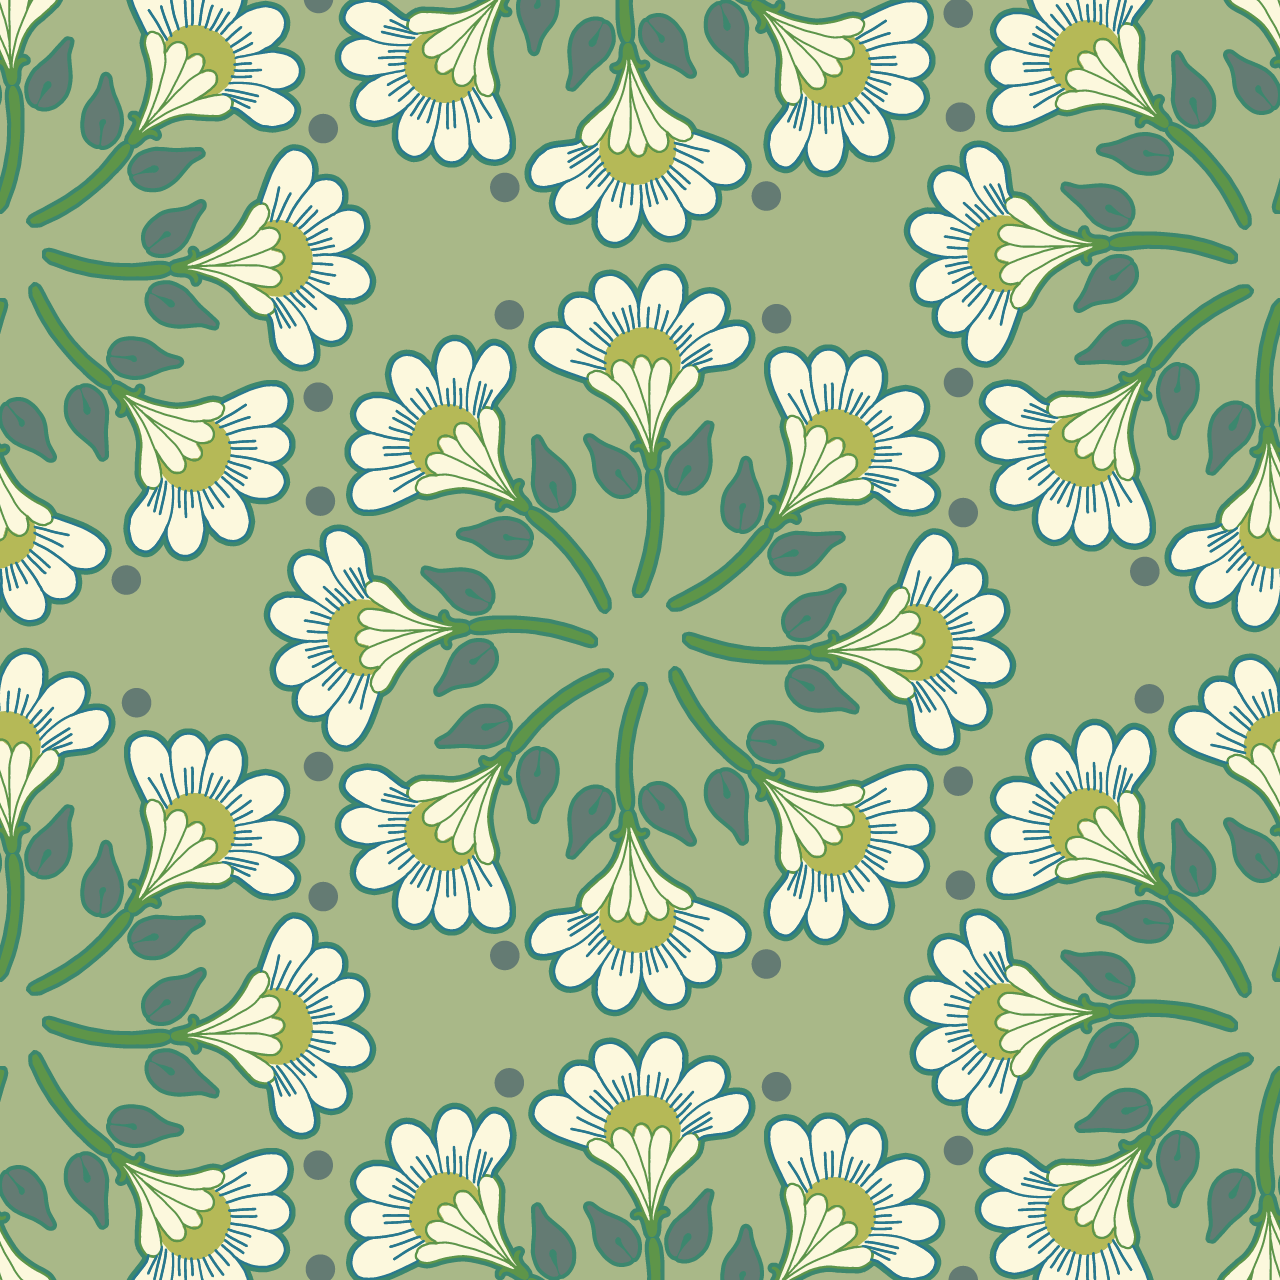 緑色の背景に白い花が話になっているパターン